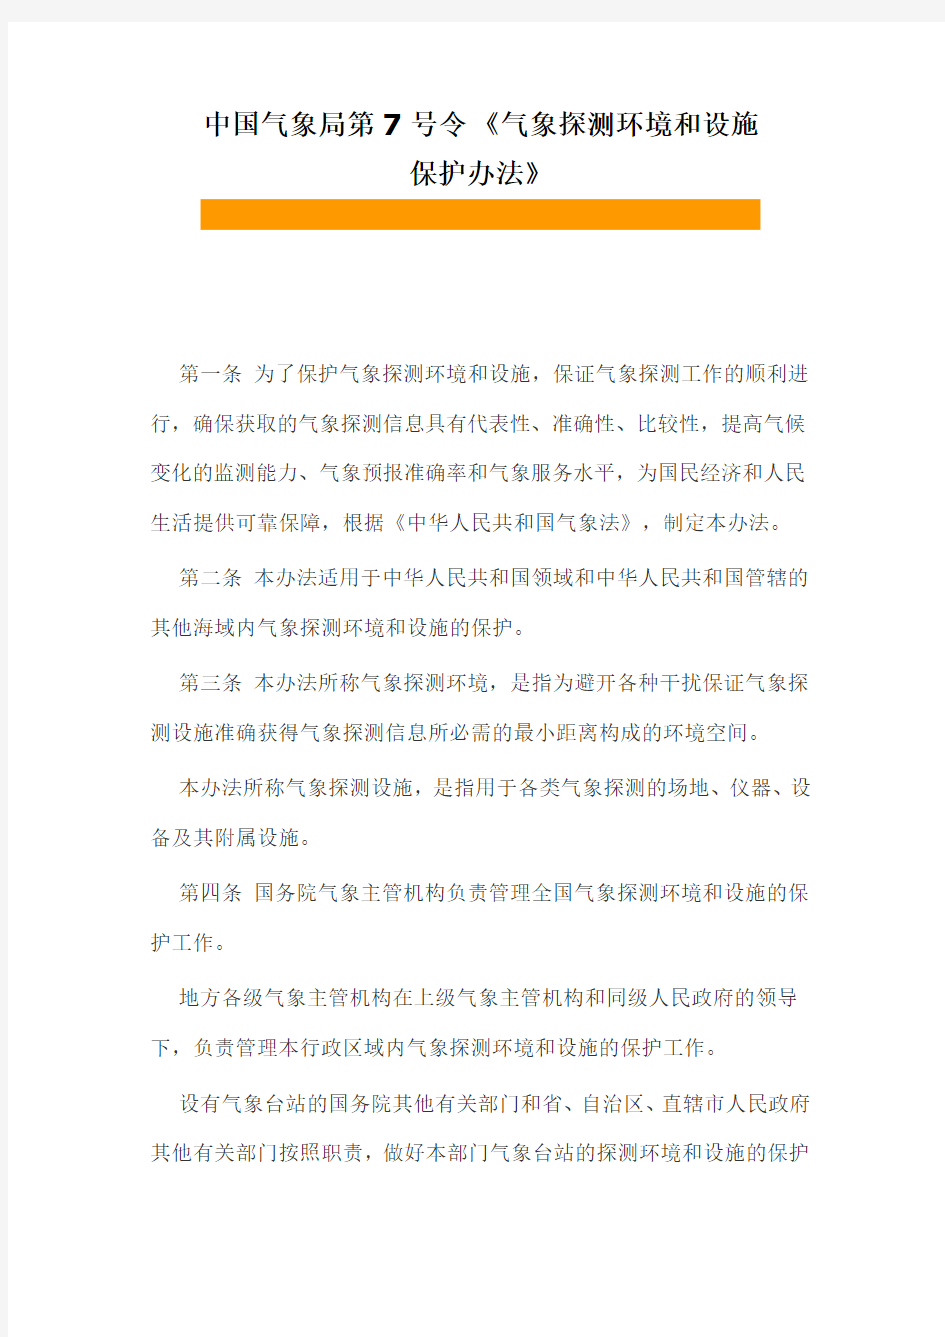 中国气象局第7号令《气象探测环境和设施保护办法》(精)